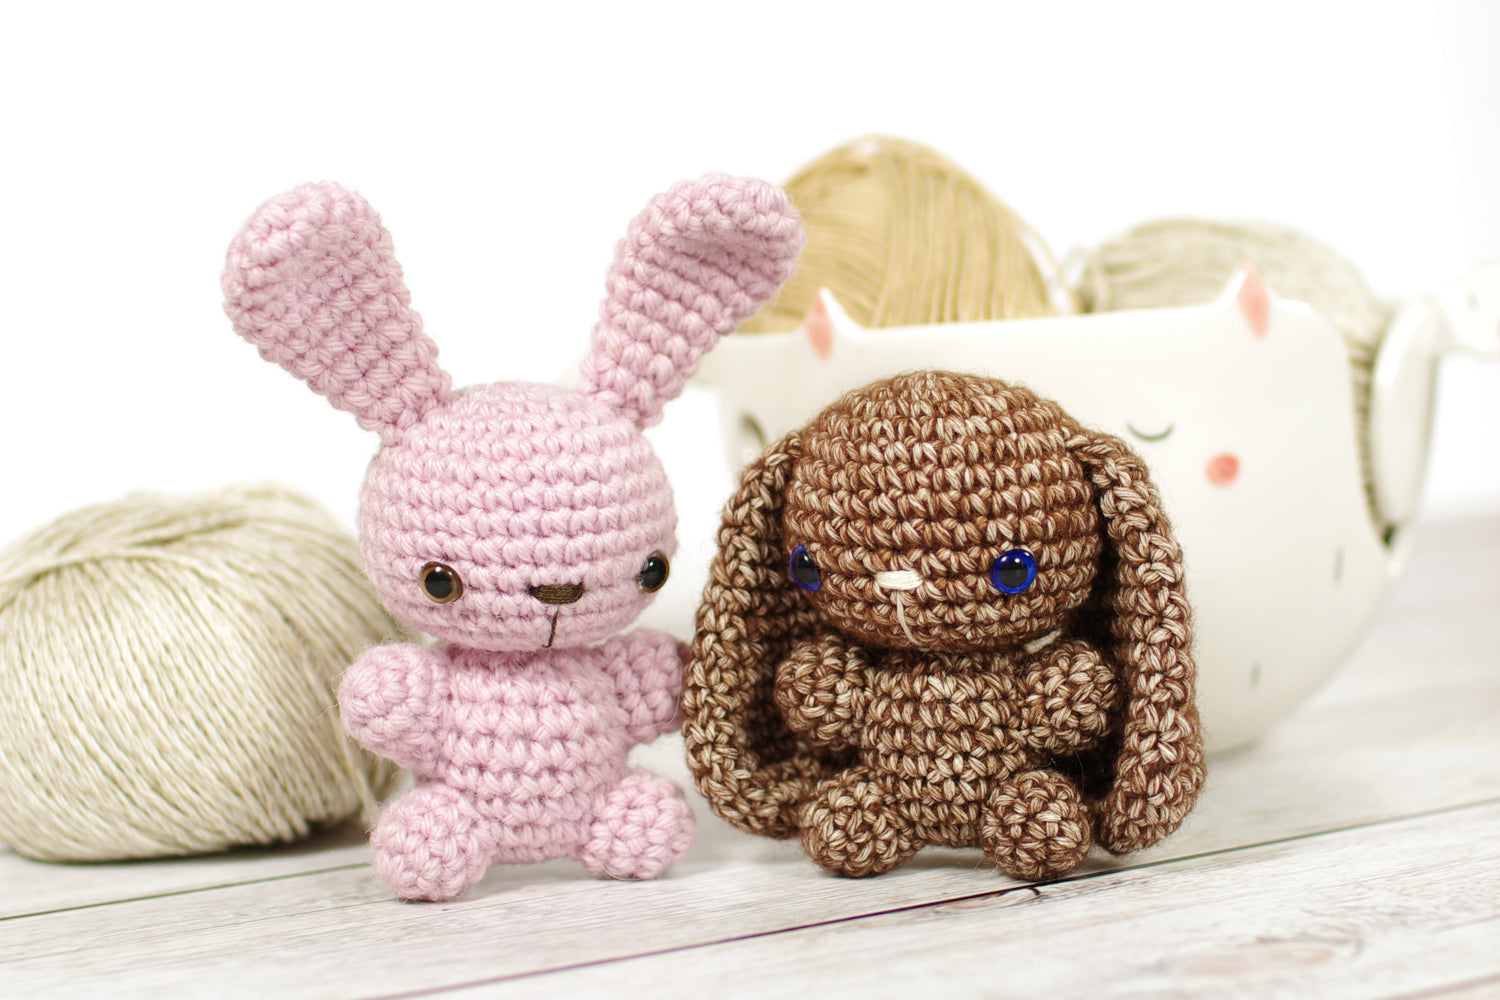 Crochet bunny from plush yarn amigurumi